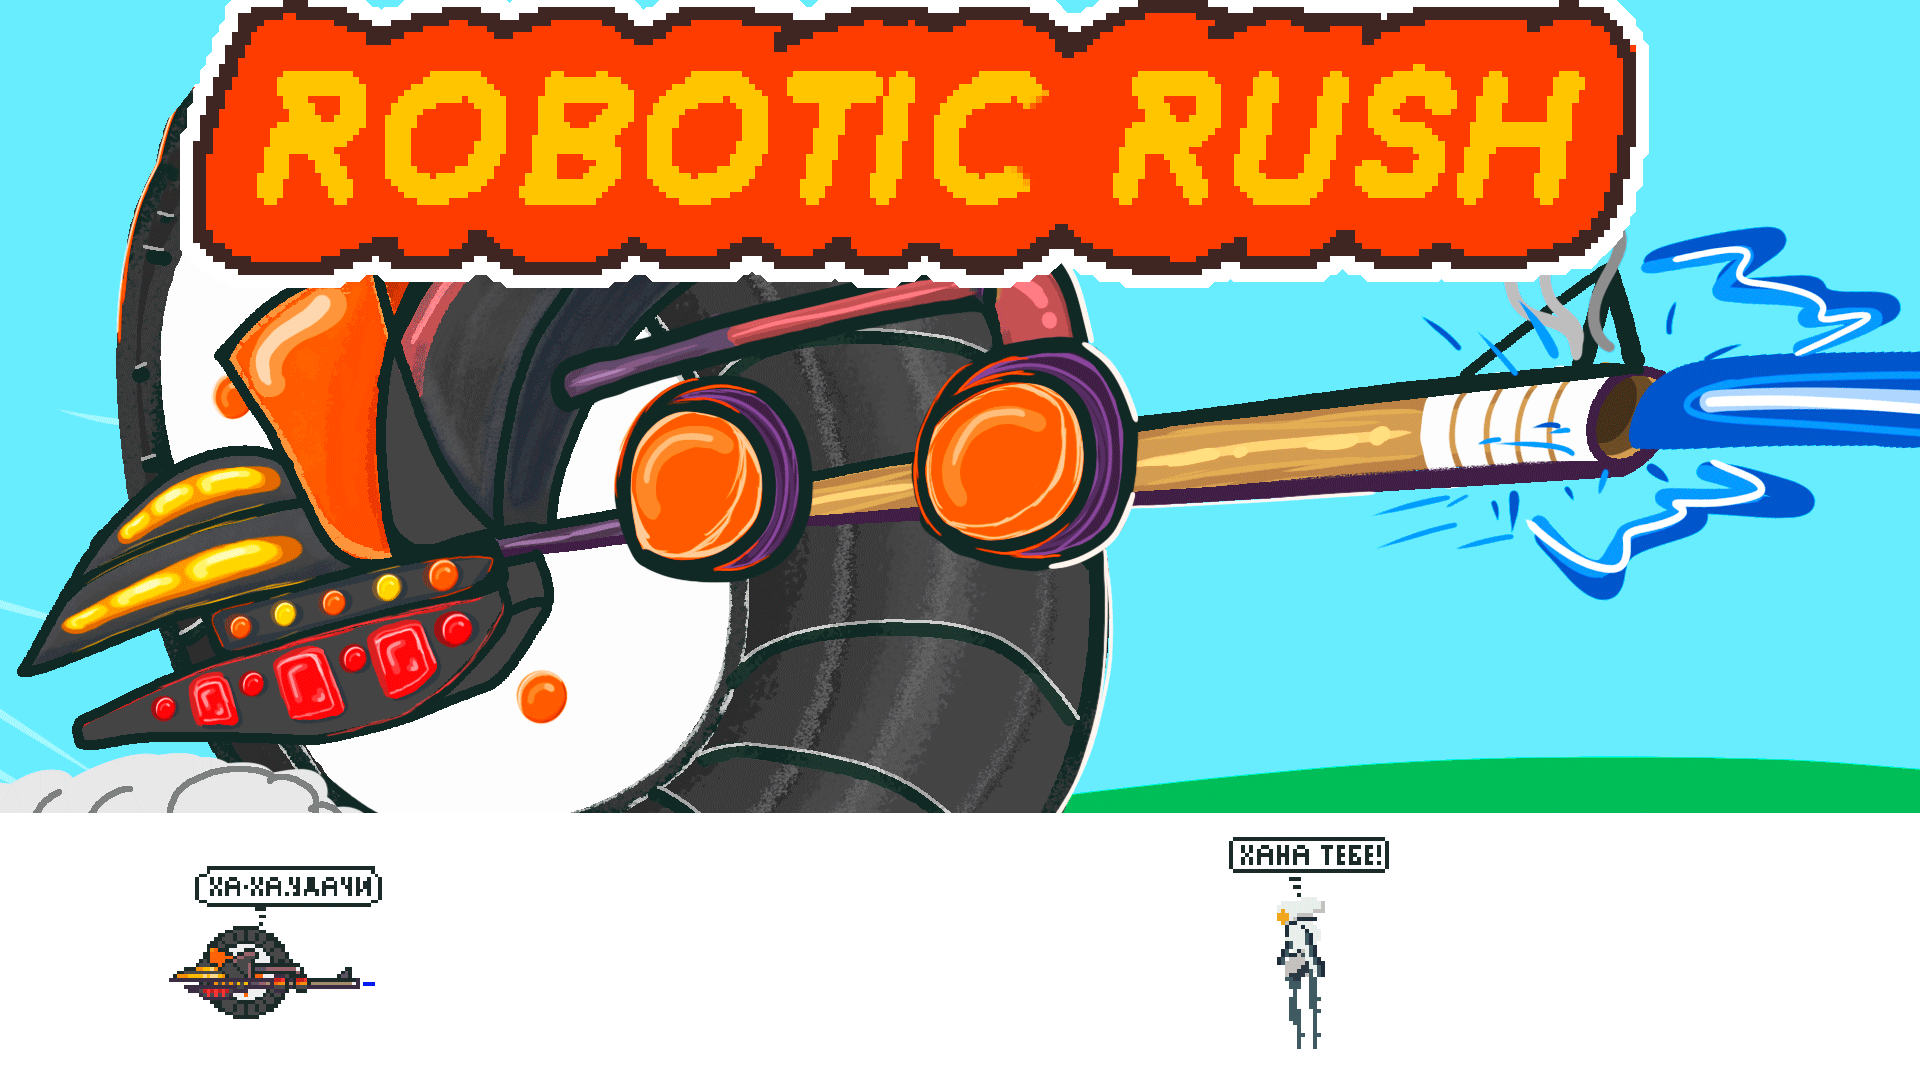 Robotic Rush